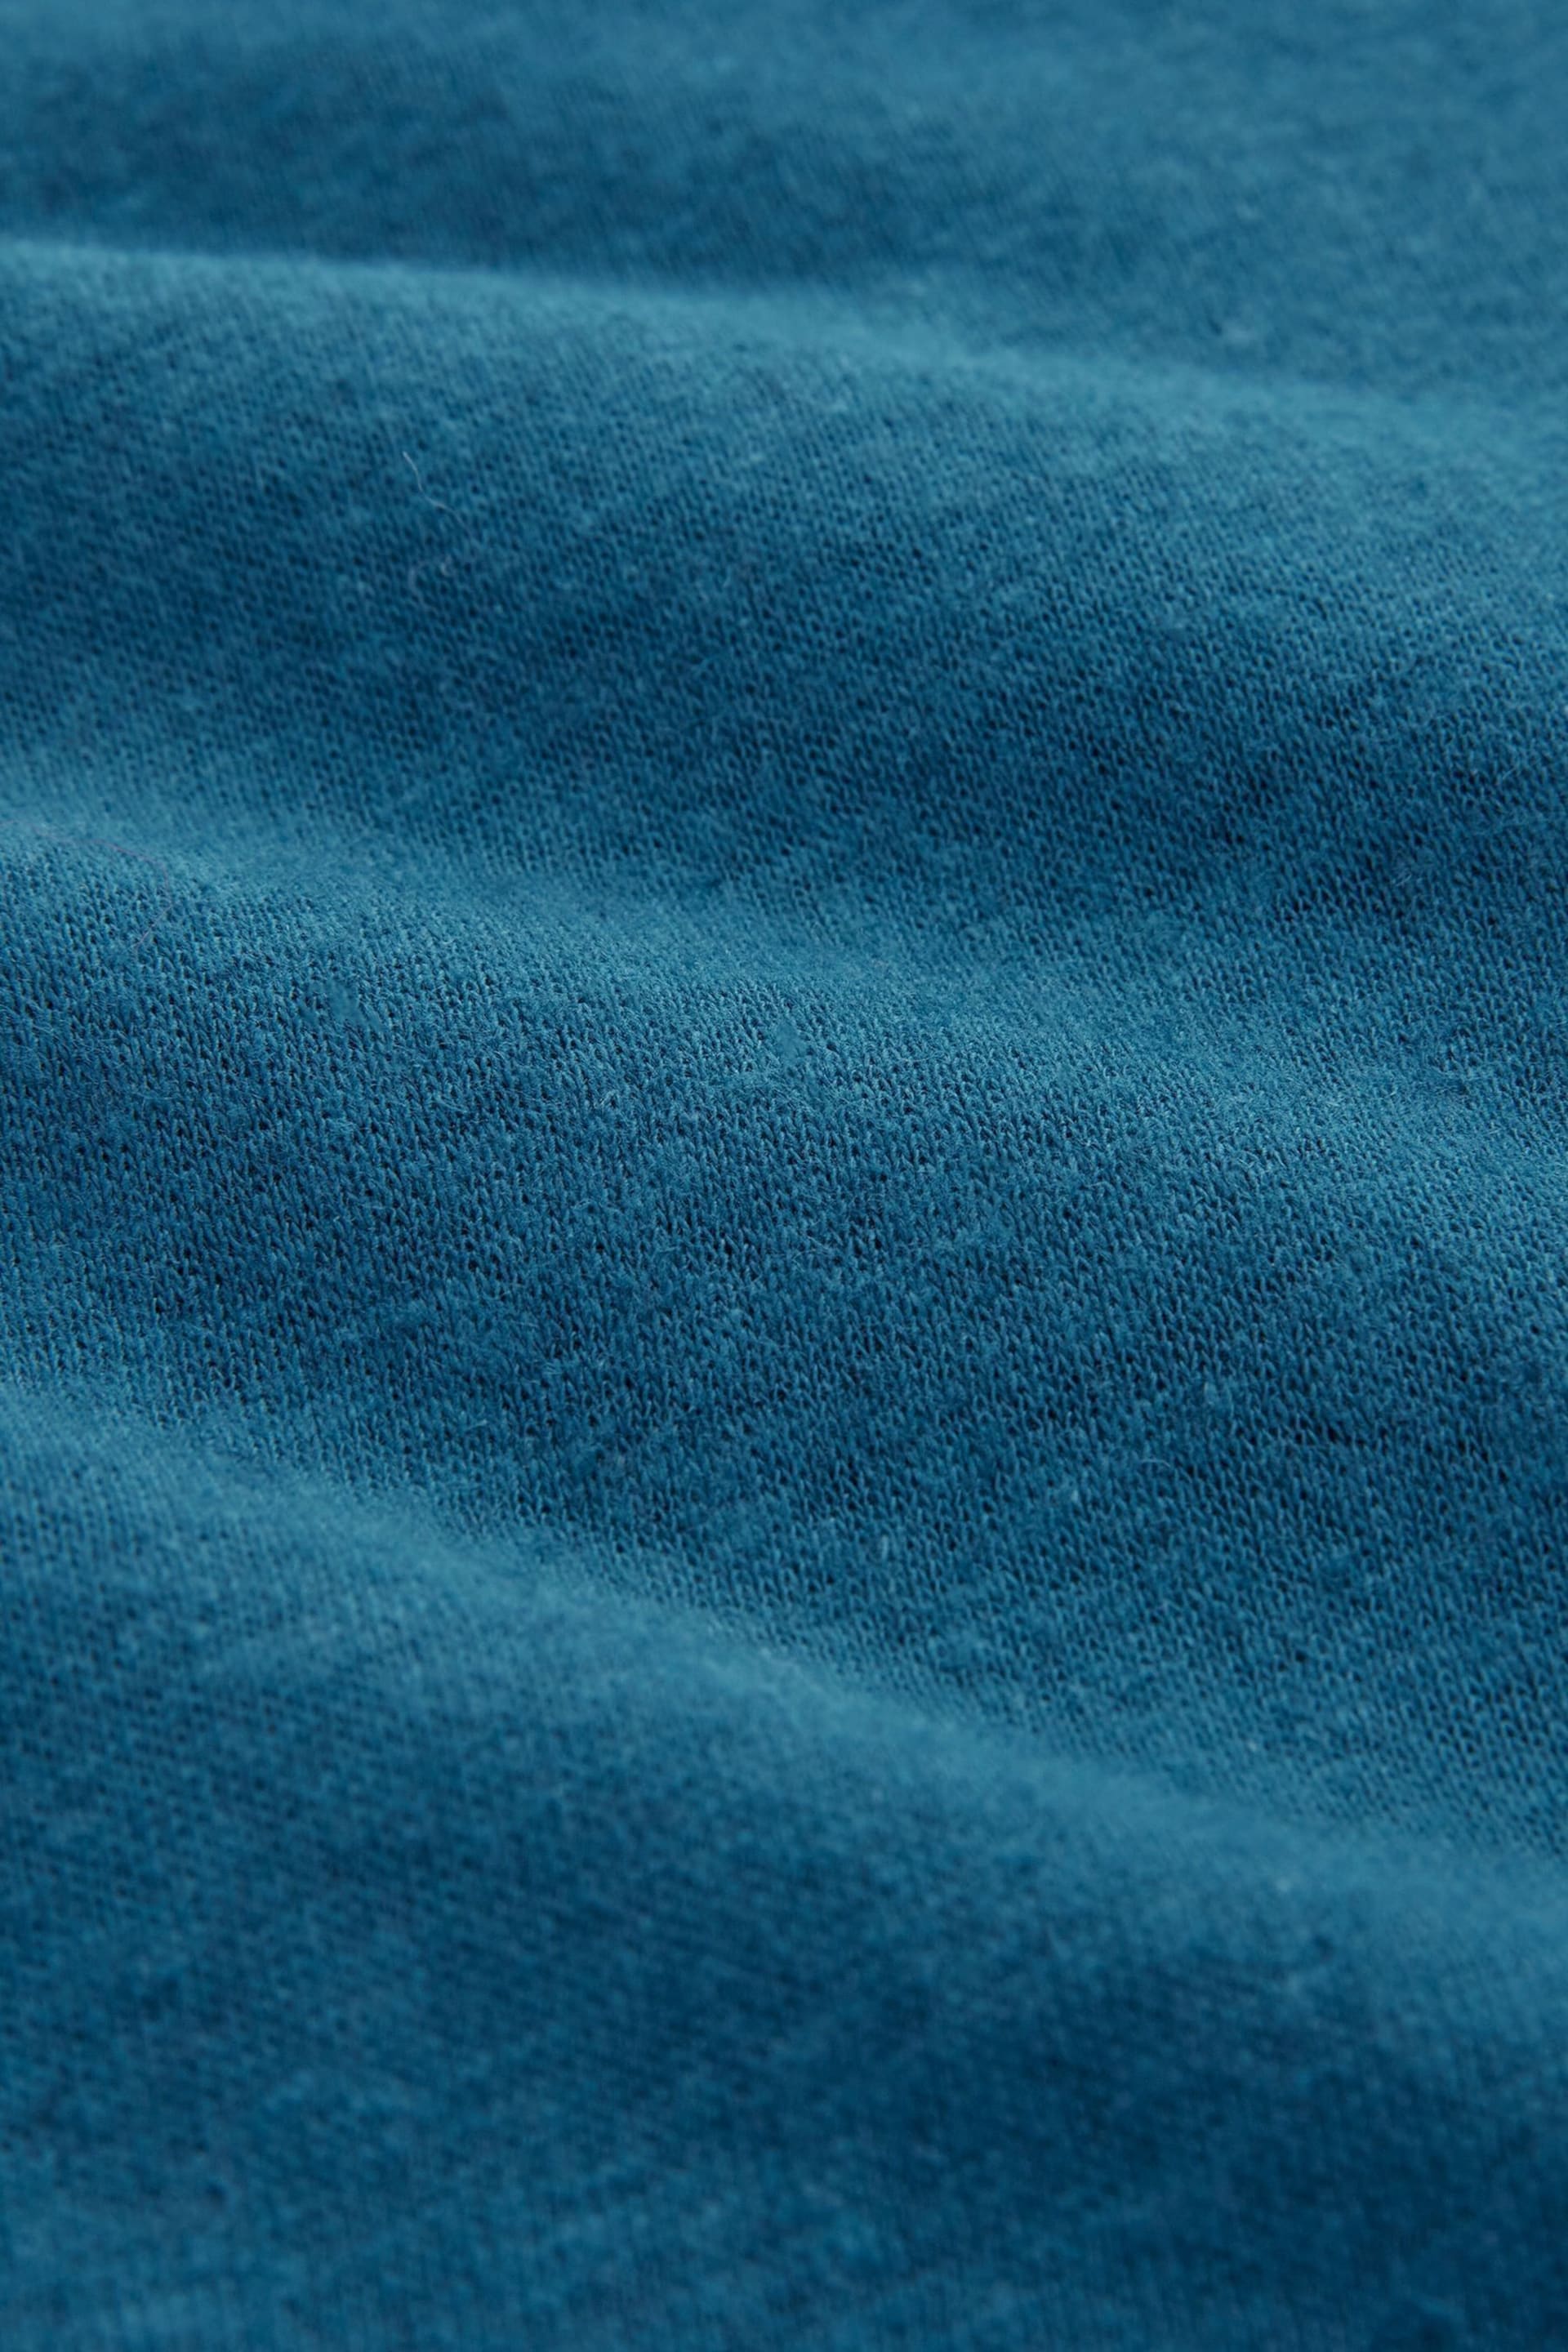 Celtic & Co. Blue Linen / Cotton Button Back Dress - Image 5 of 6